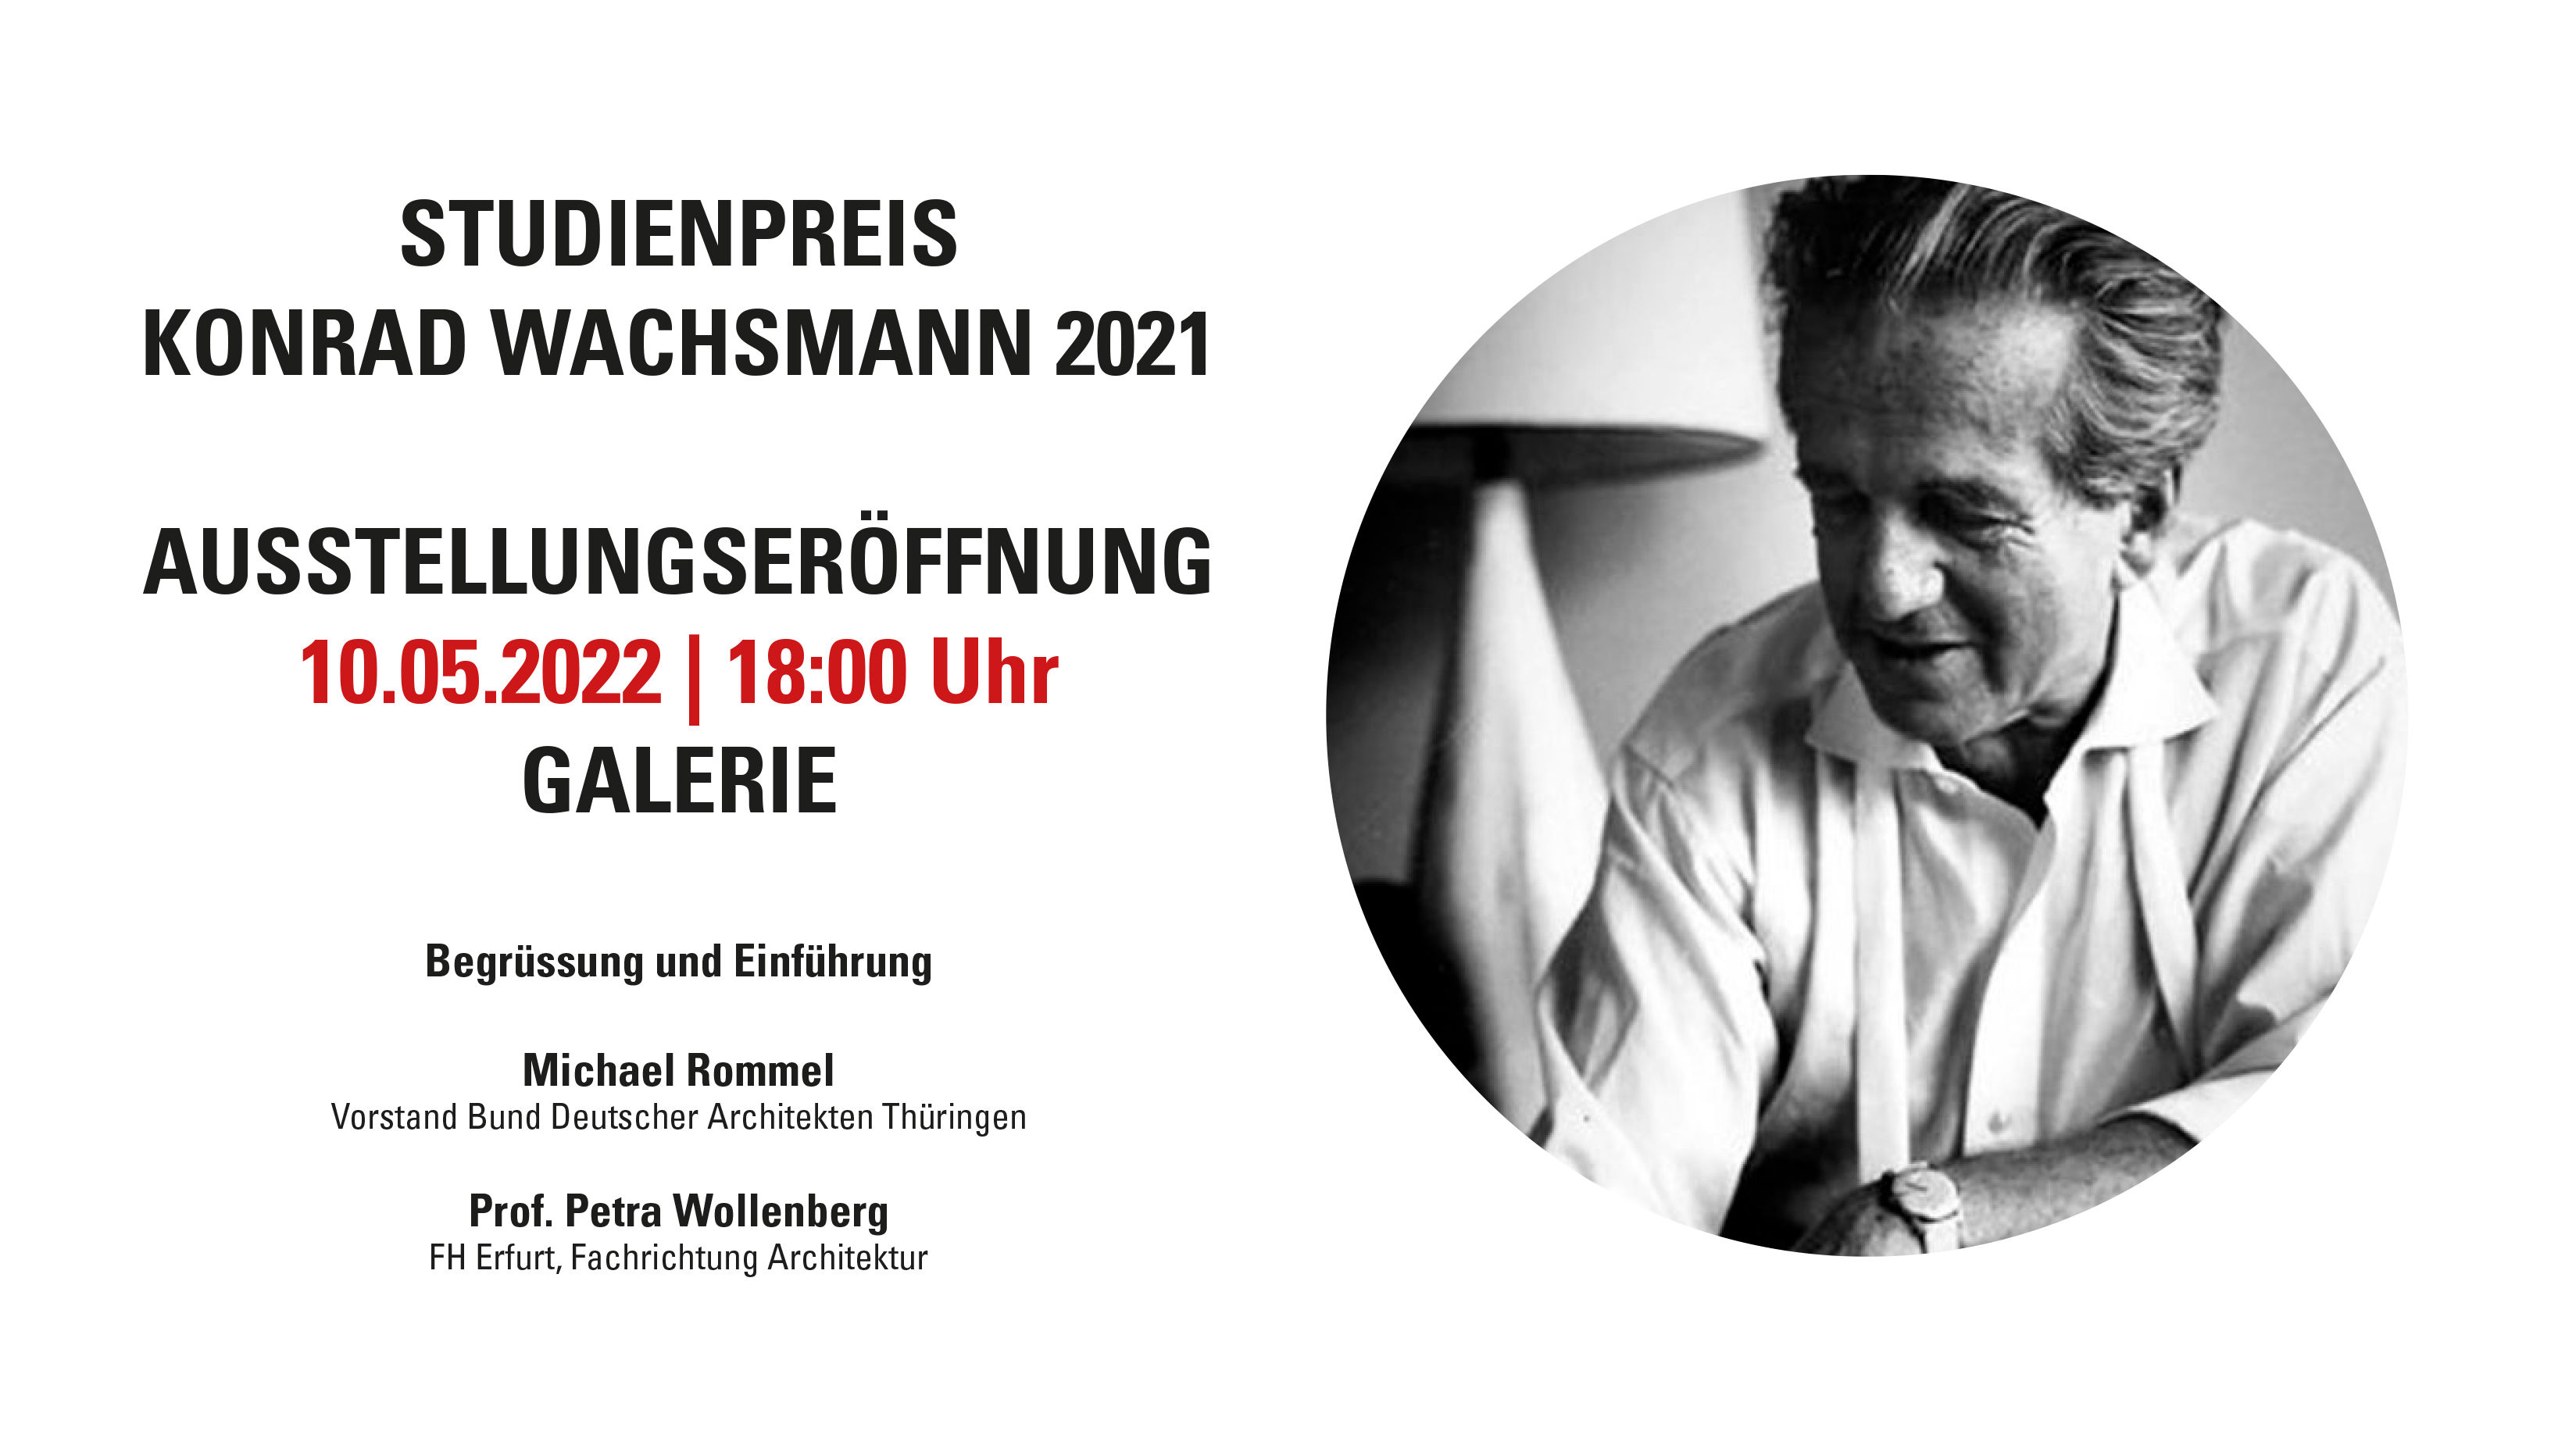 Plakat mit der Terminankündigung der Vernissage zum Konrad Wachsmann Studienpreis 2021 am 10.05.2022